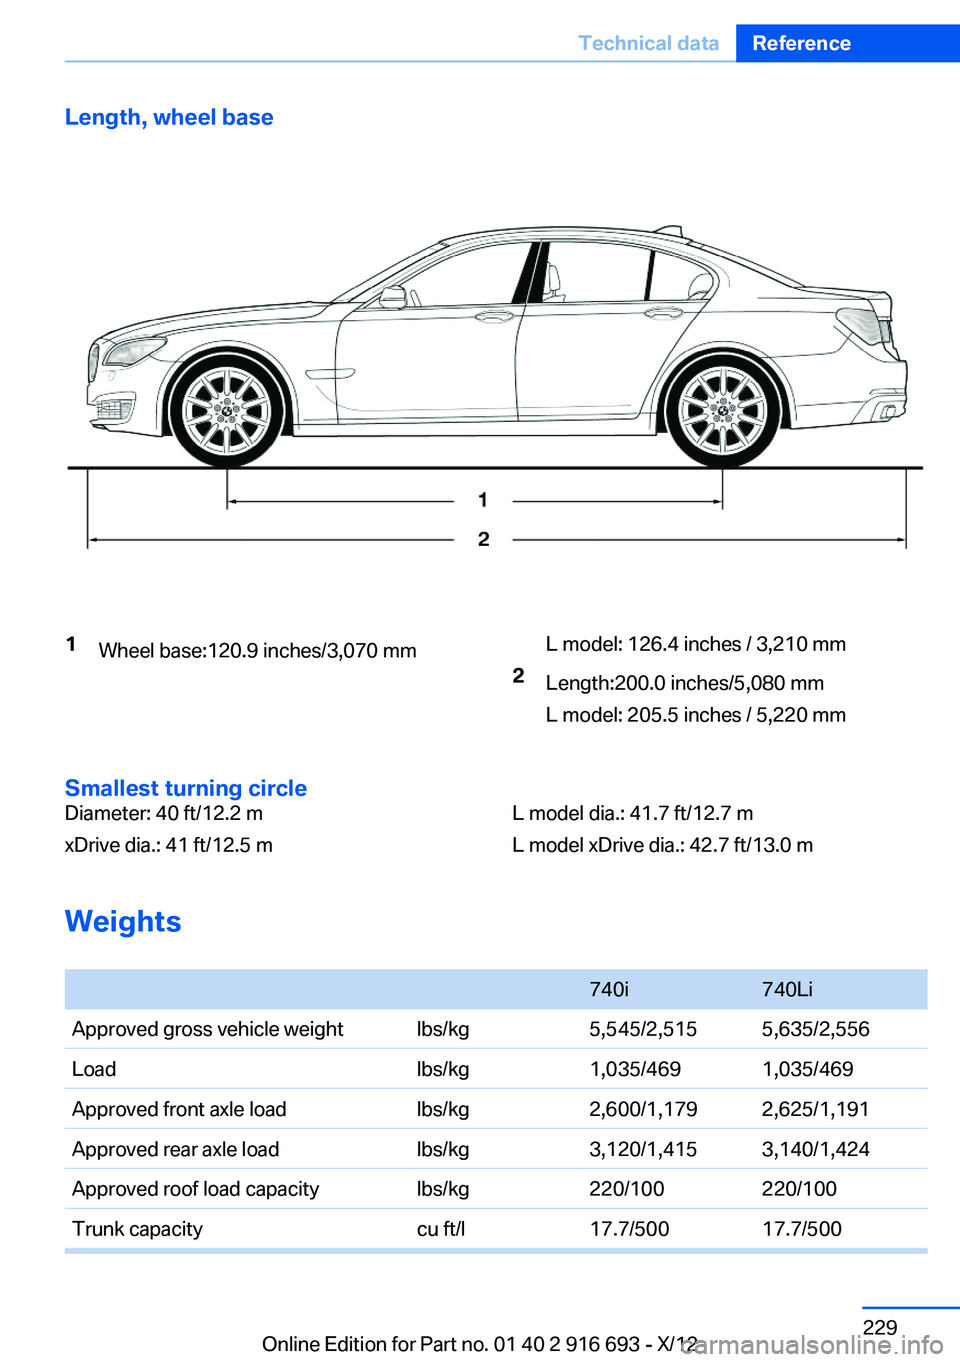 BMW 740LI XDRIVE 2013  Owners Manual Length, wheel base1Wheel base:120.9 inches/3,070 mmL model: 126.4 inches / 3,210 mm2Length:200.0 inches/5,080 mm
L model: 205.5 inches / 5,220 mm
Smallest turning circle
Diameter: 40 ft/12.2 m
xDrive 